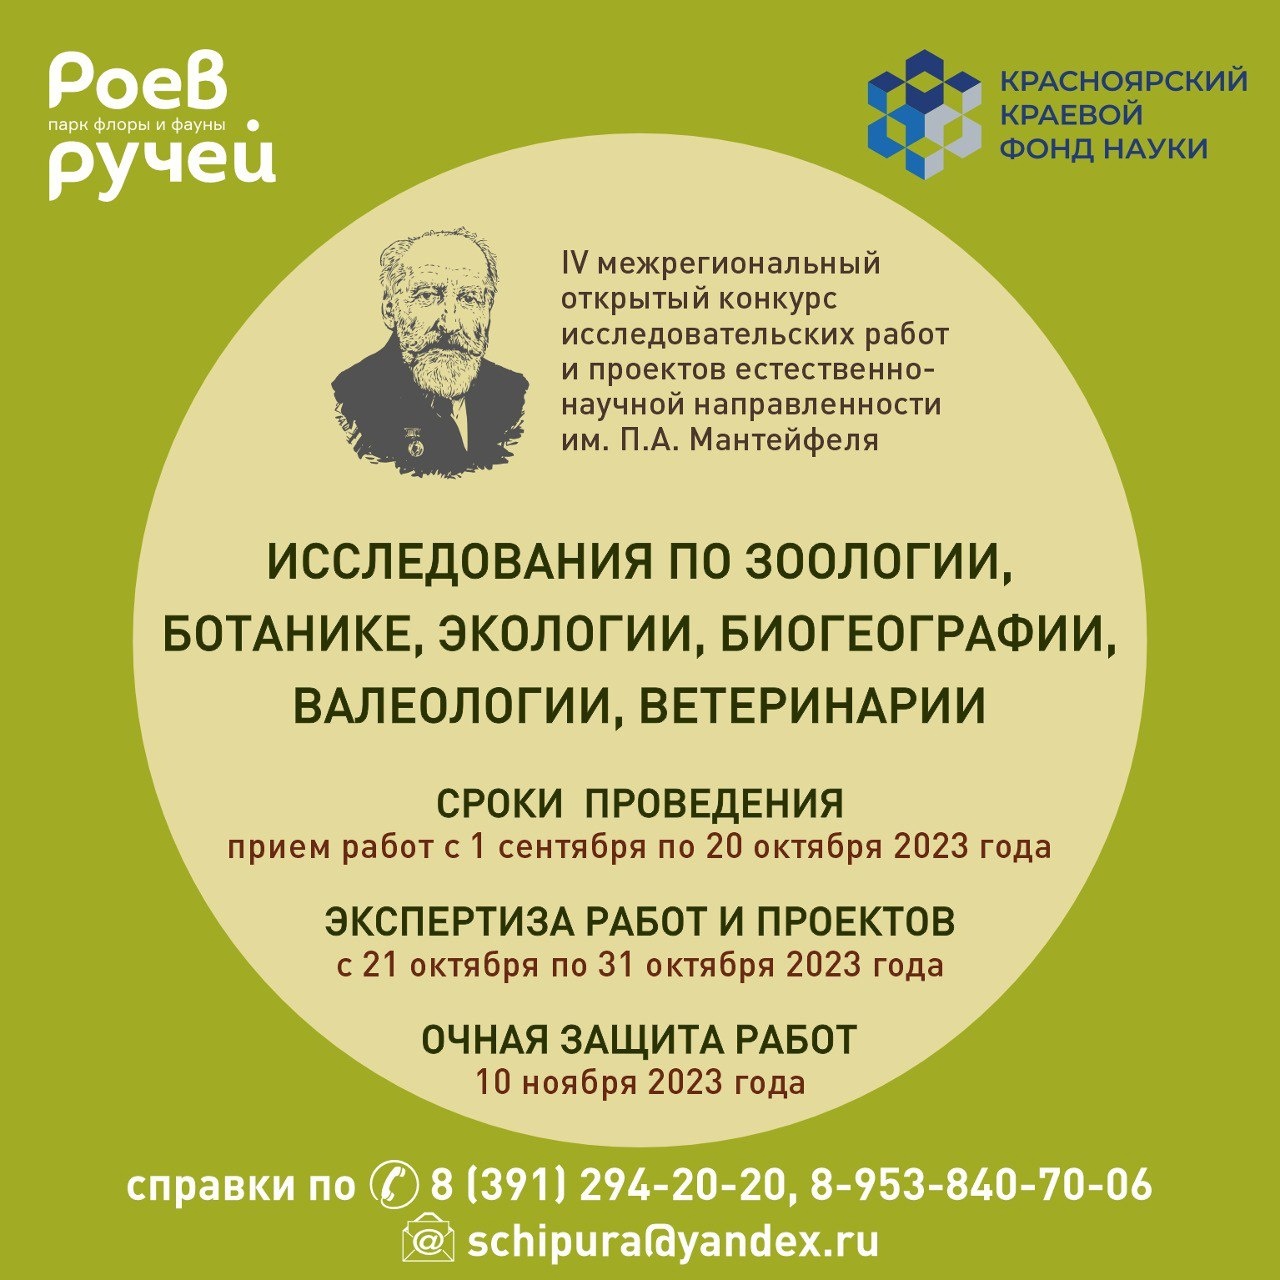 Объявлены абсолютные победители Всероссийского конкурса сочинений 2023 года